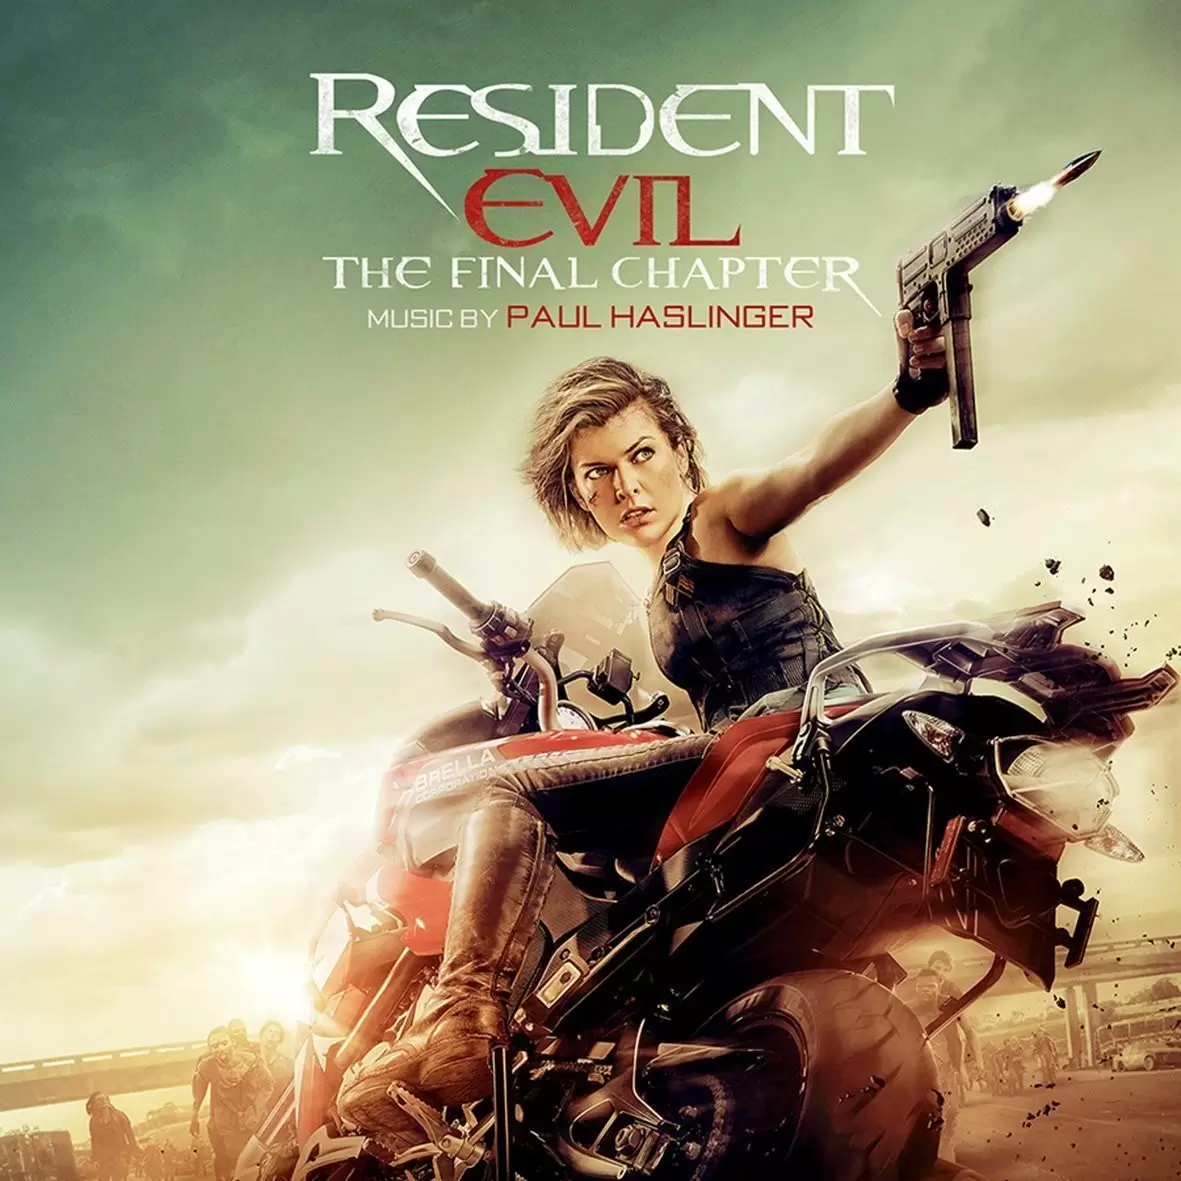 Bande originale de films, jeux vidéos et séries TV - Resident Evil : Chapitre Final